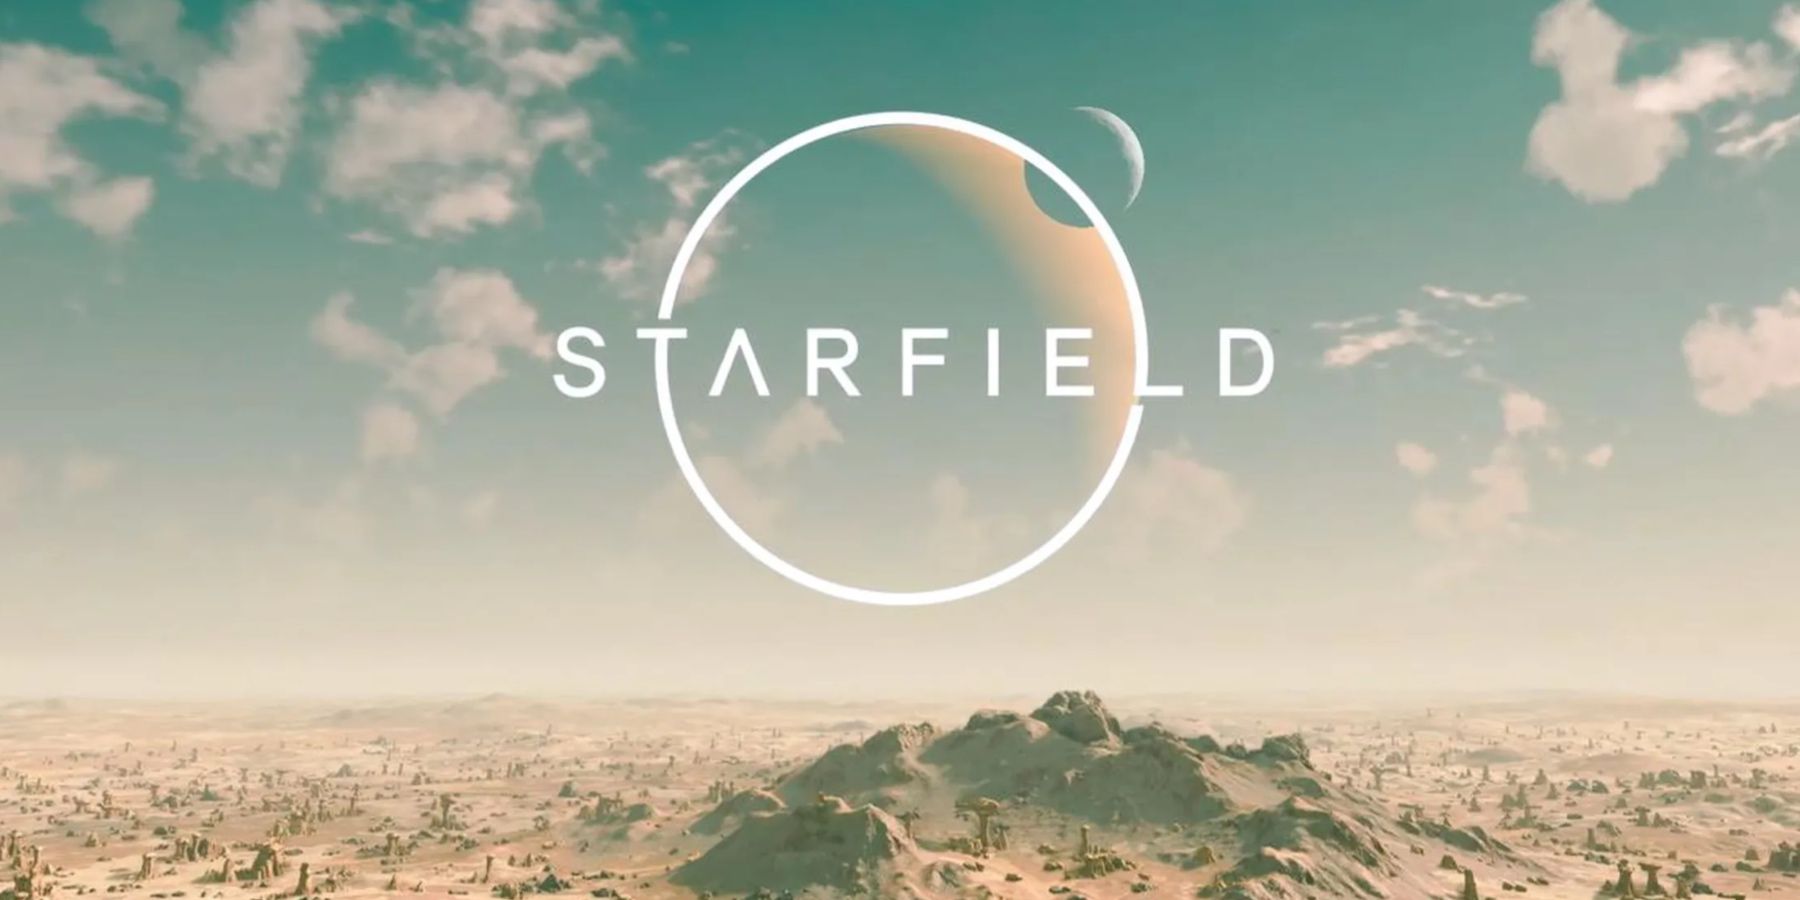 starfield-logo-desert-planet-landscape